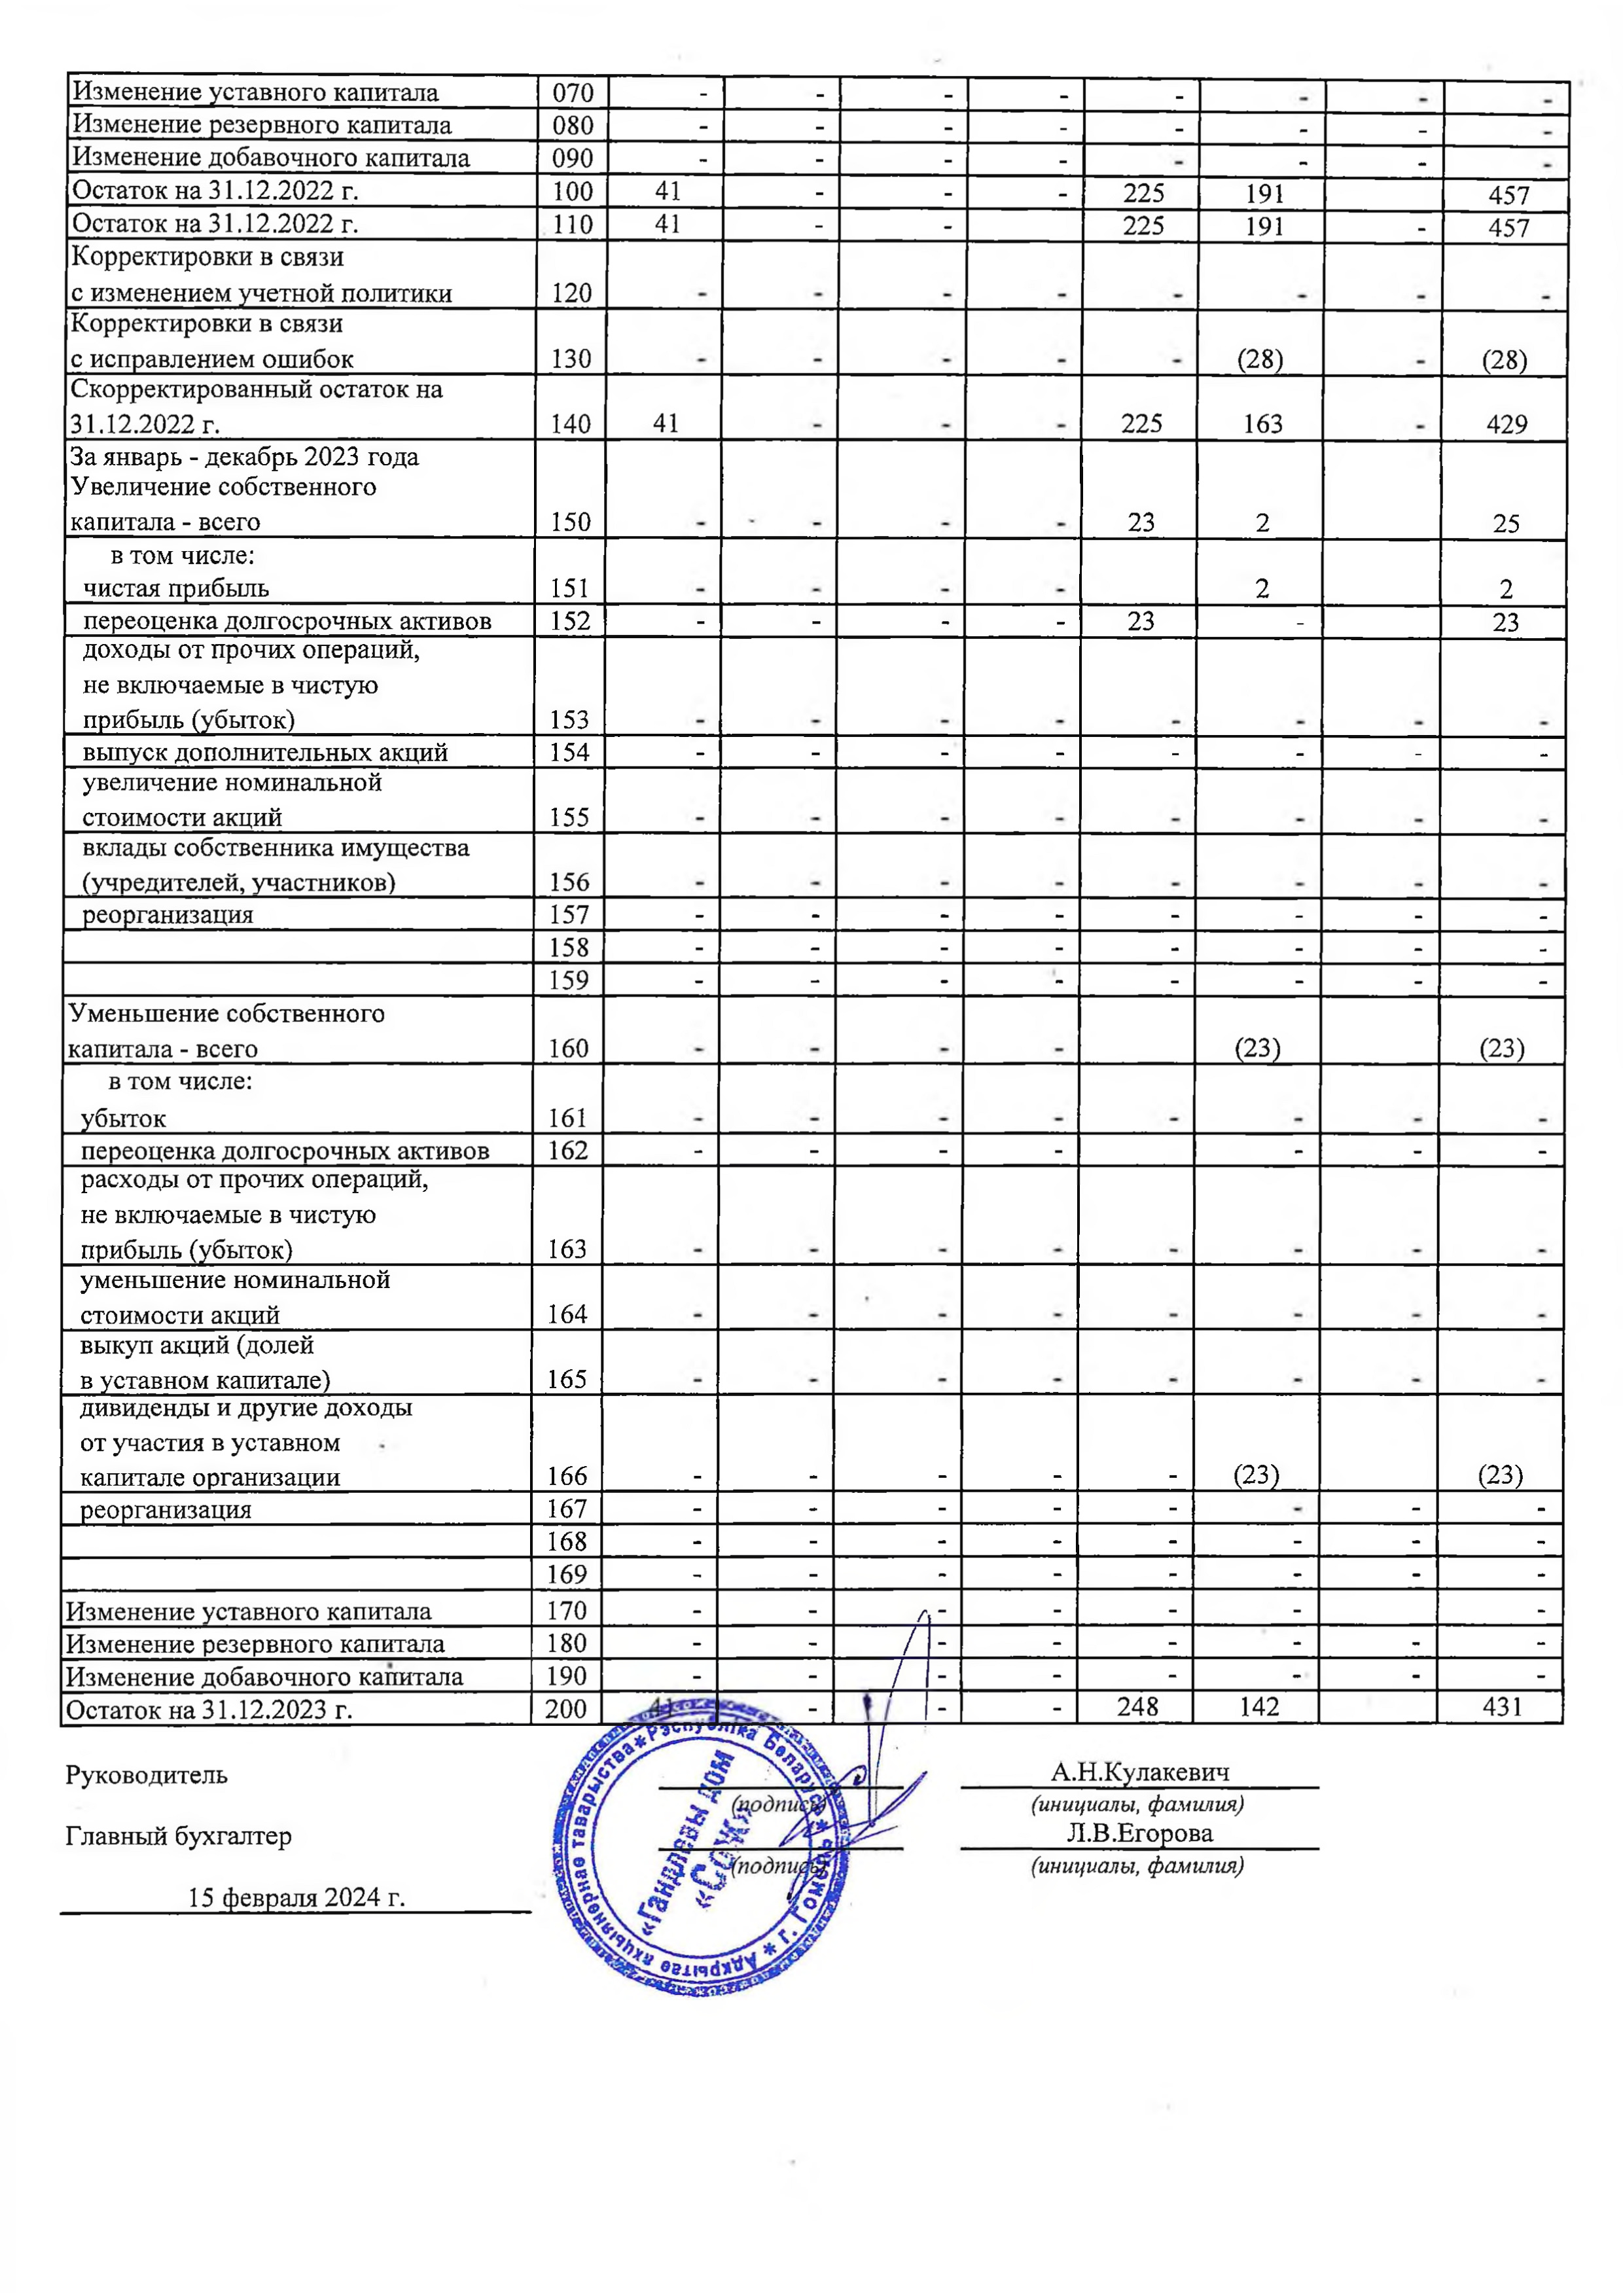 ОАО Торговый дом Сож - Отчет об изменении собственного капитала за 2023 год